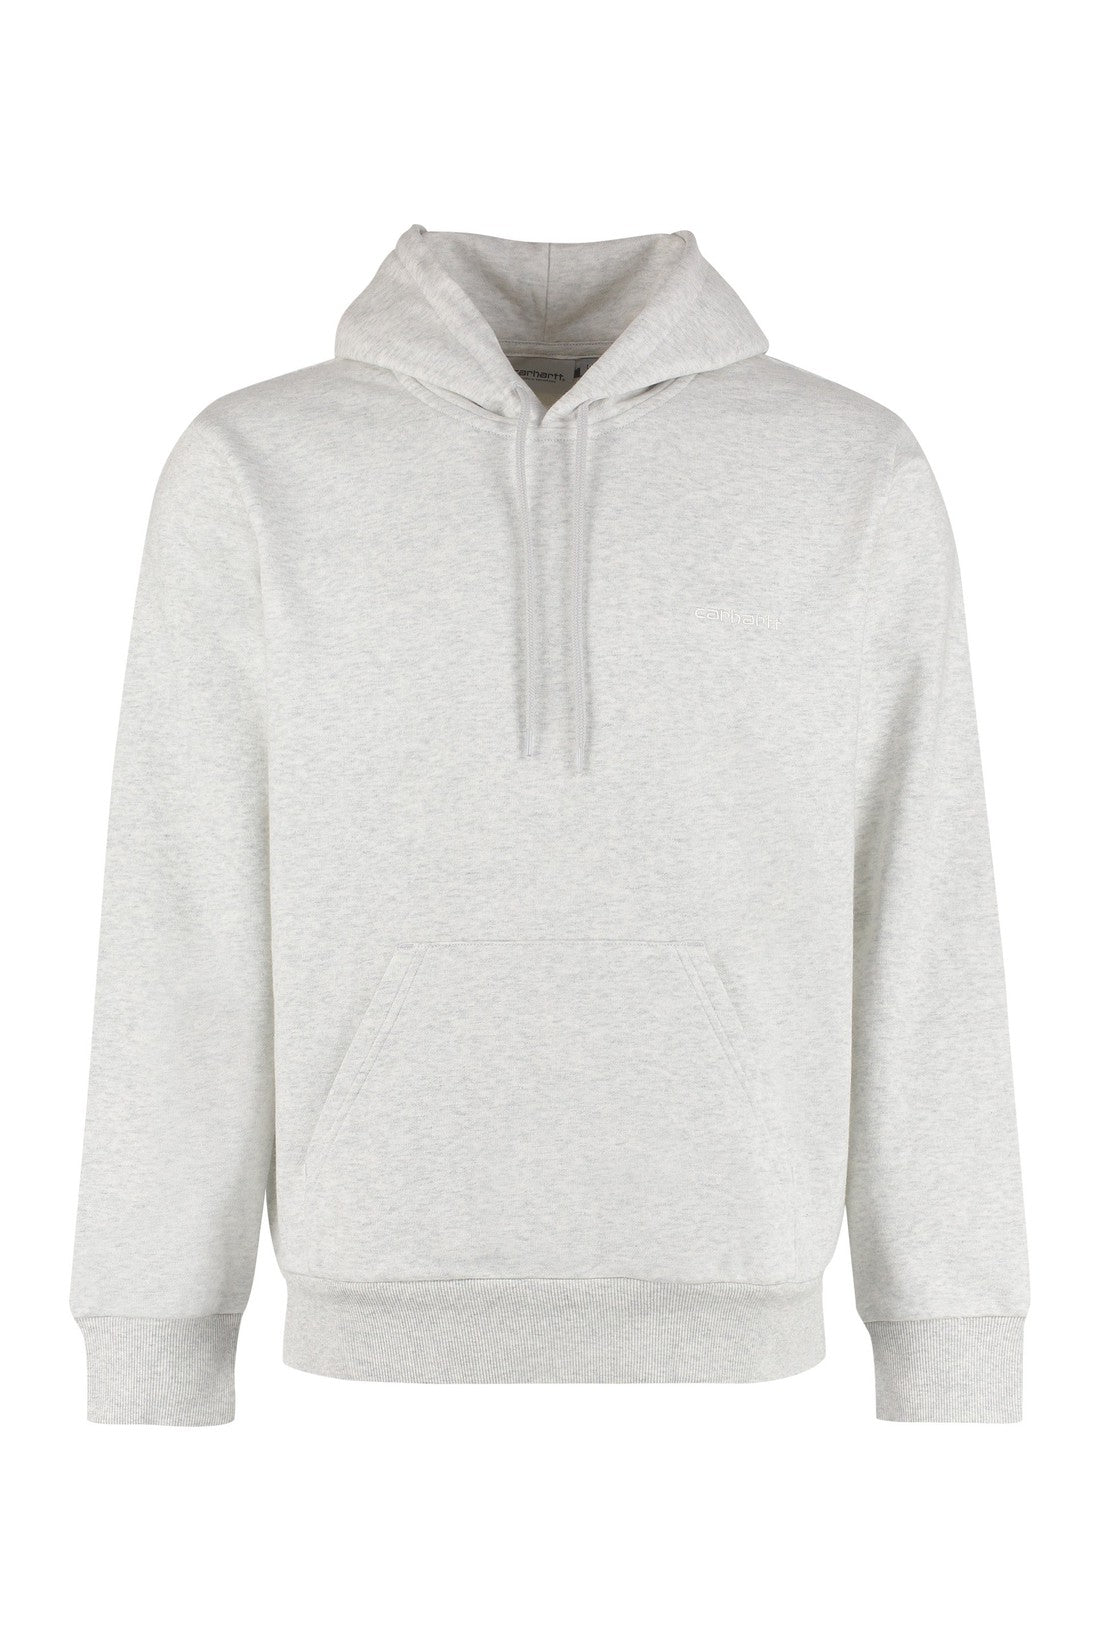 Carhartt-OUTLET-SALE-Cotton hoodie-ARCHIVIST